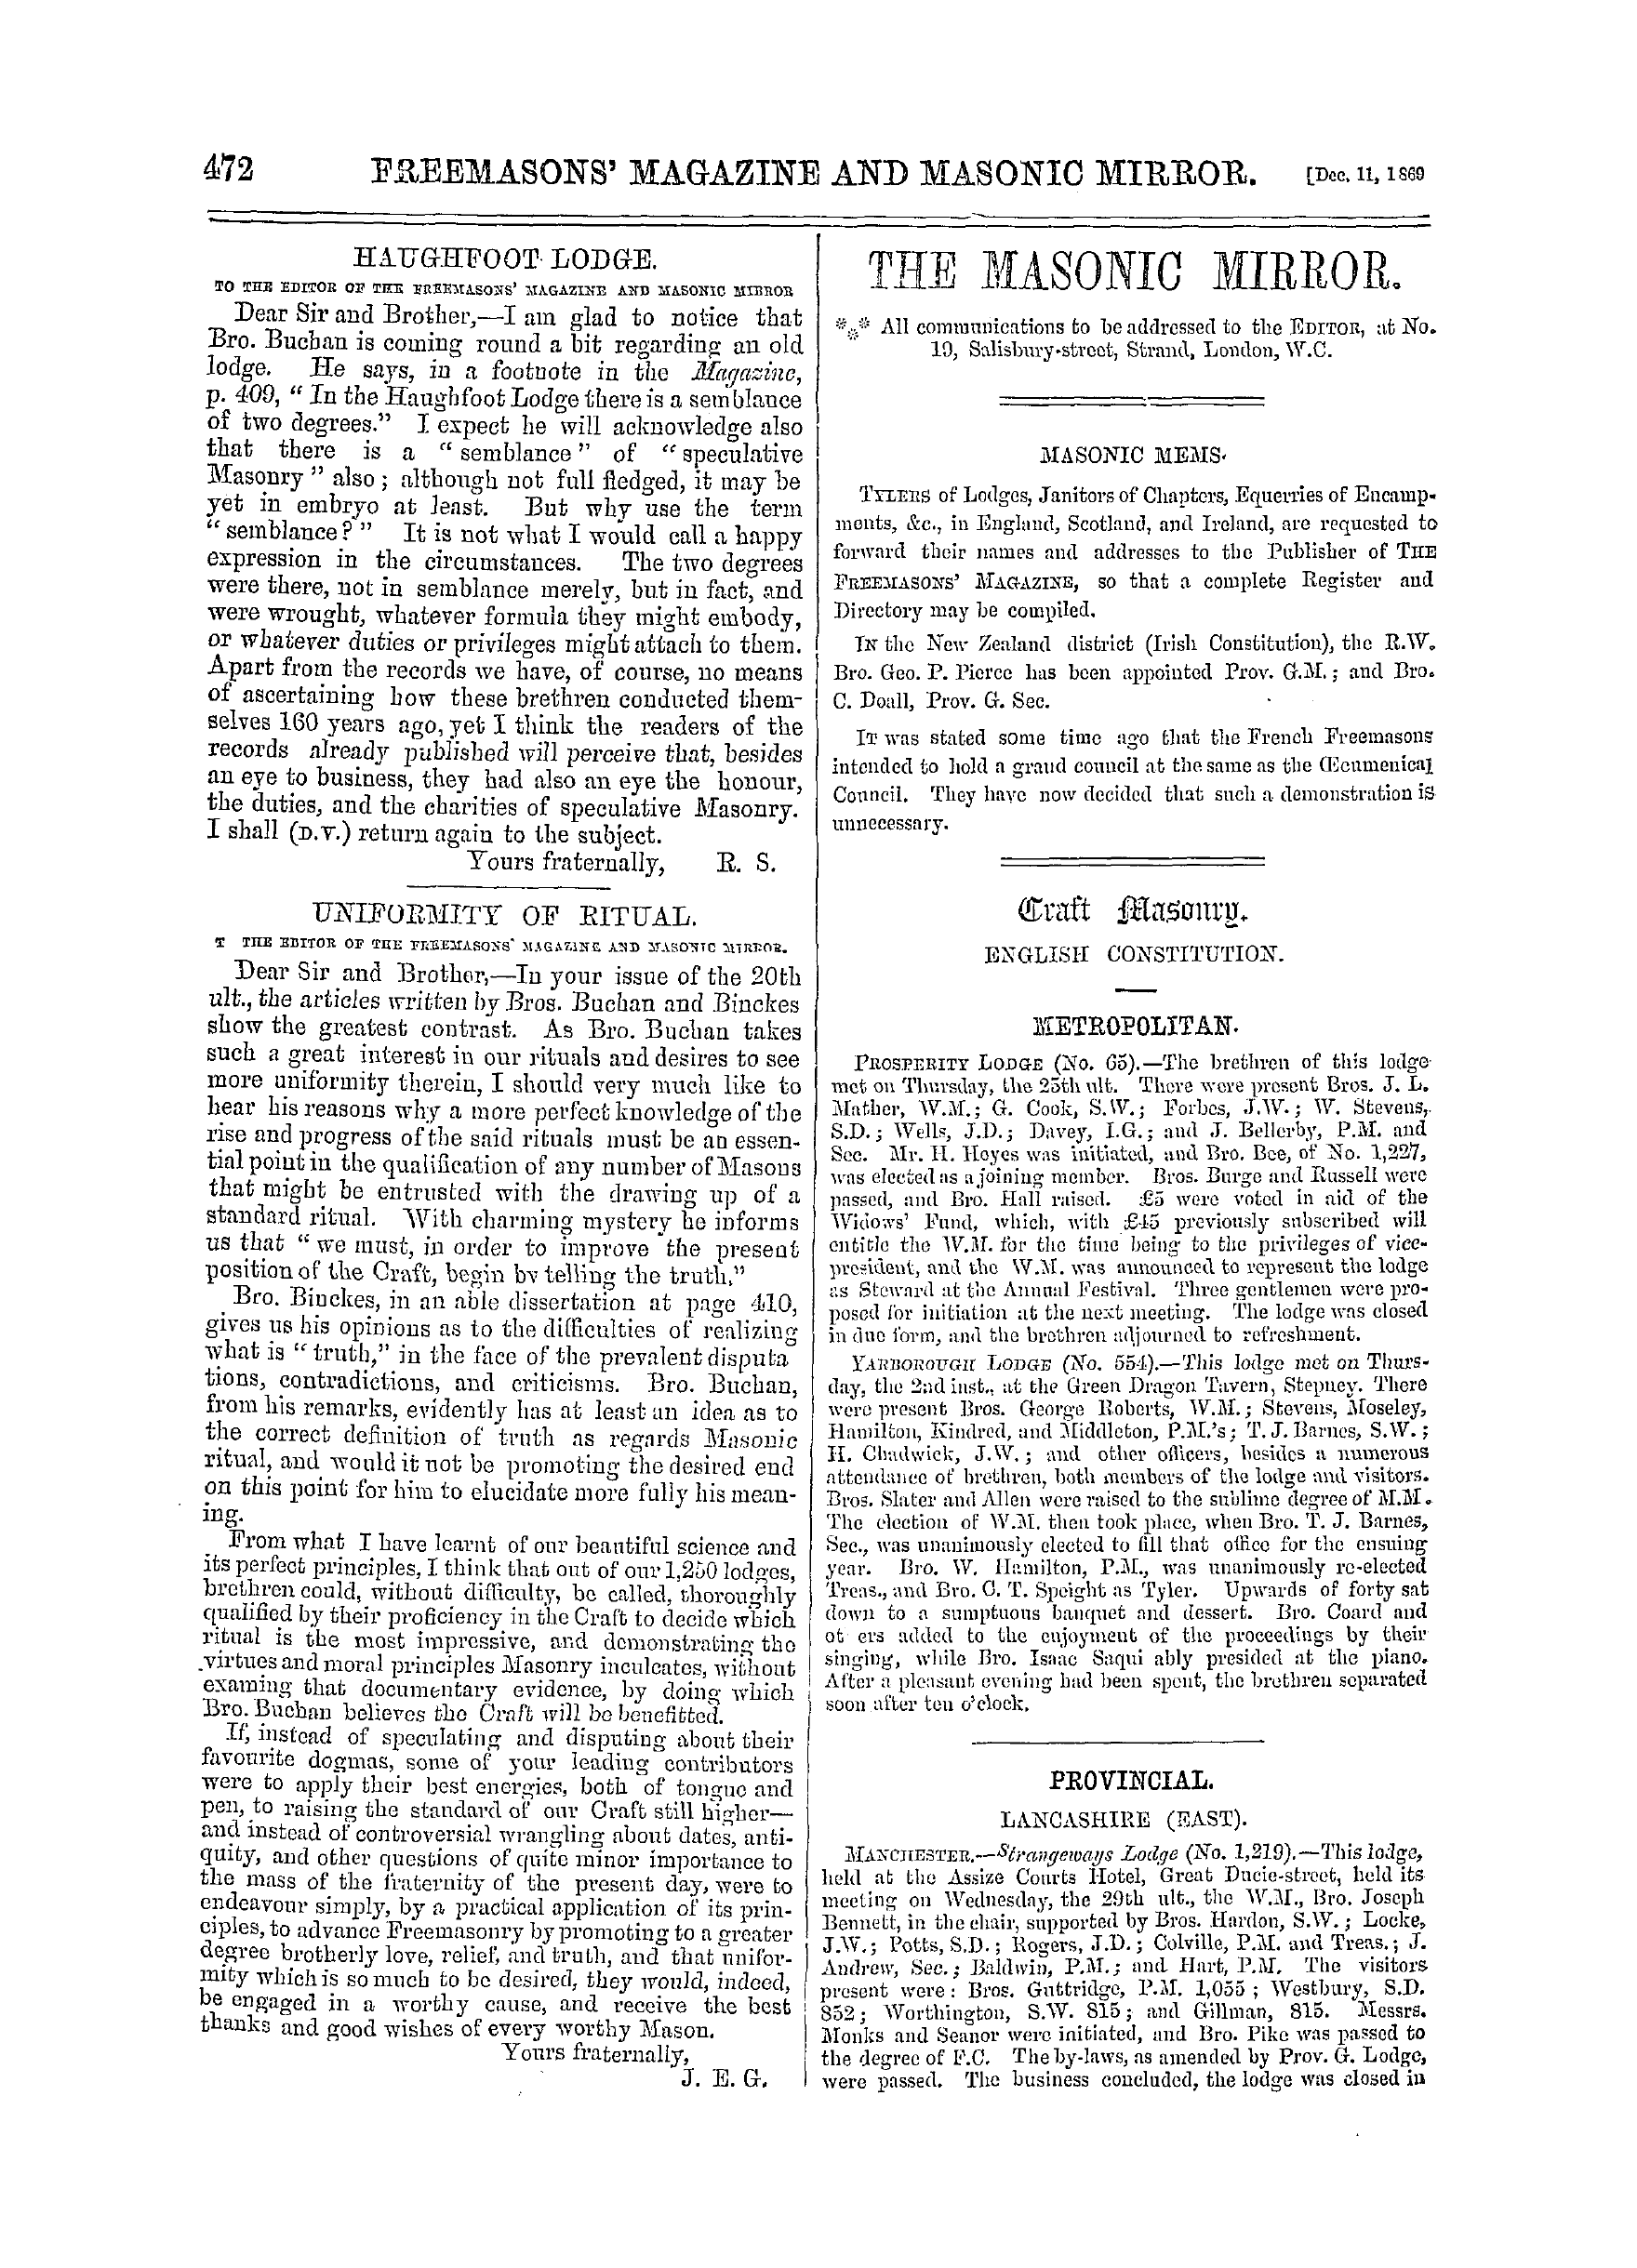 The Freemasons' Monthly Magazine: 1869-12-11: 12